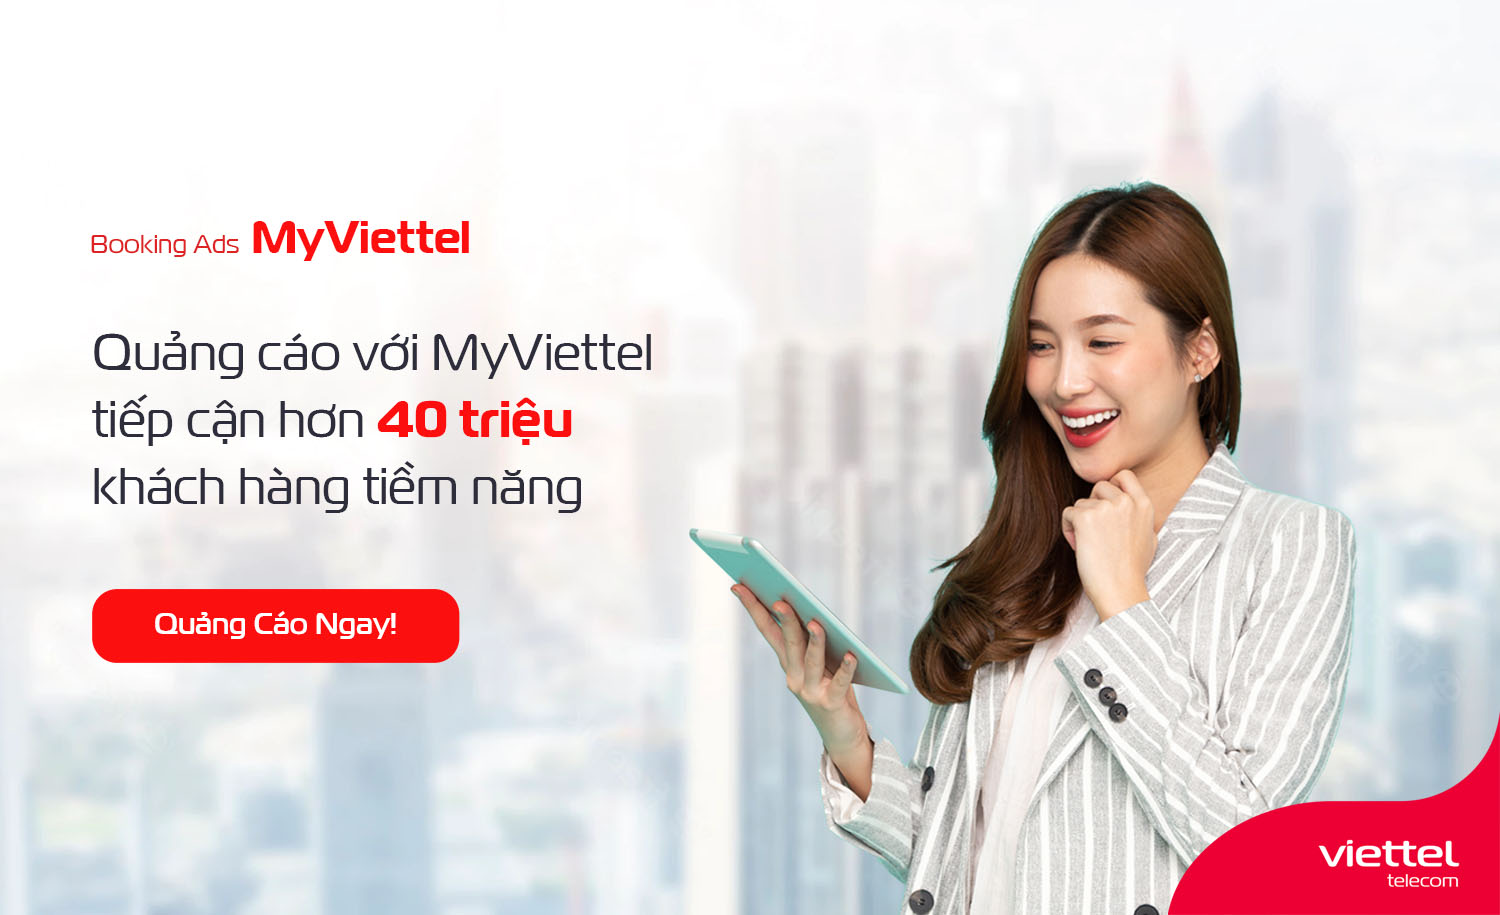 Quảng cáo trên My Viettel là cách tốt nhất để tiếp cận với hàng triệu khách hàng tiềm năng. Với công nghệ quảng cáo tiên tiến, My Viettel cung cấp cho bạn các công cụ quảng cáo đa dạng để tăng mức độ chuyển đổi trong chiến dịch quảng cáo của bạn. Đăng ký ngay hôm nay và khám phá cách tiếp cận với thị trường tiềm năng một cách hiệu quả nhất.